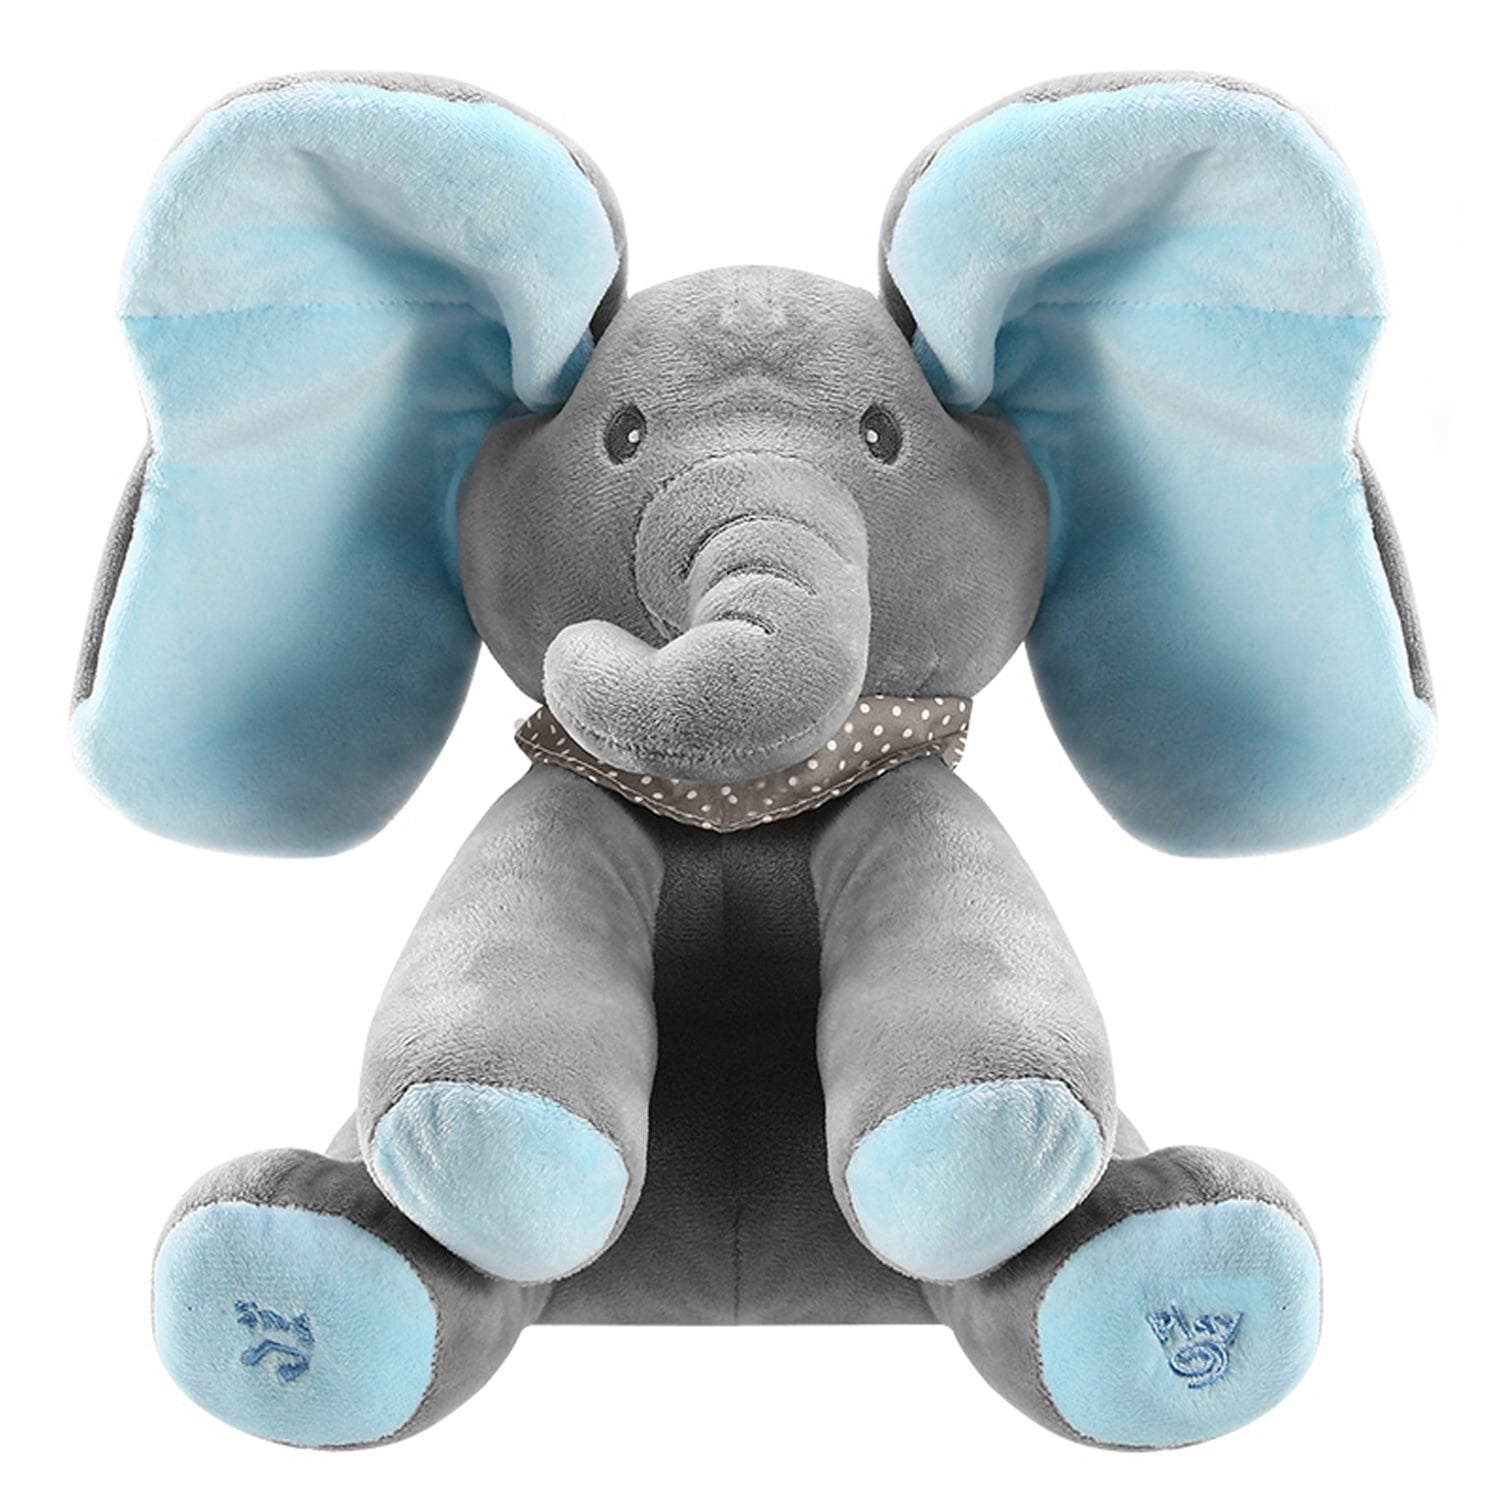 singing stuffed elephant